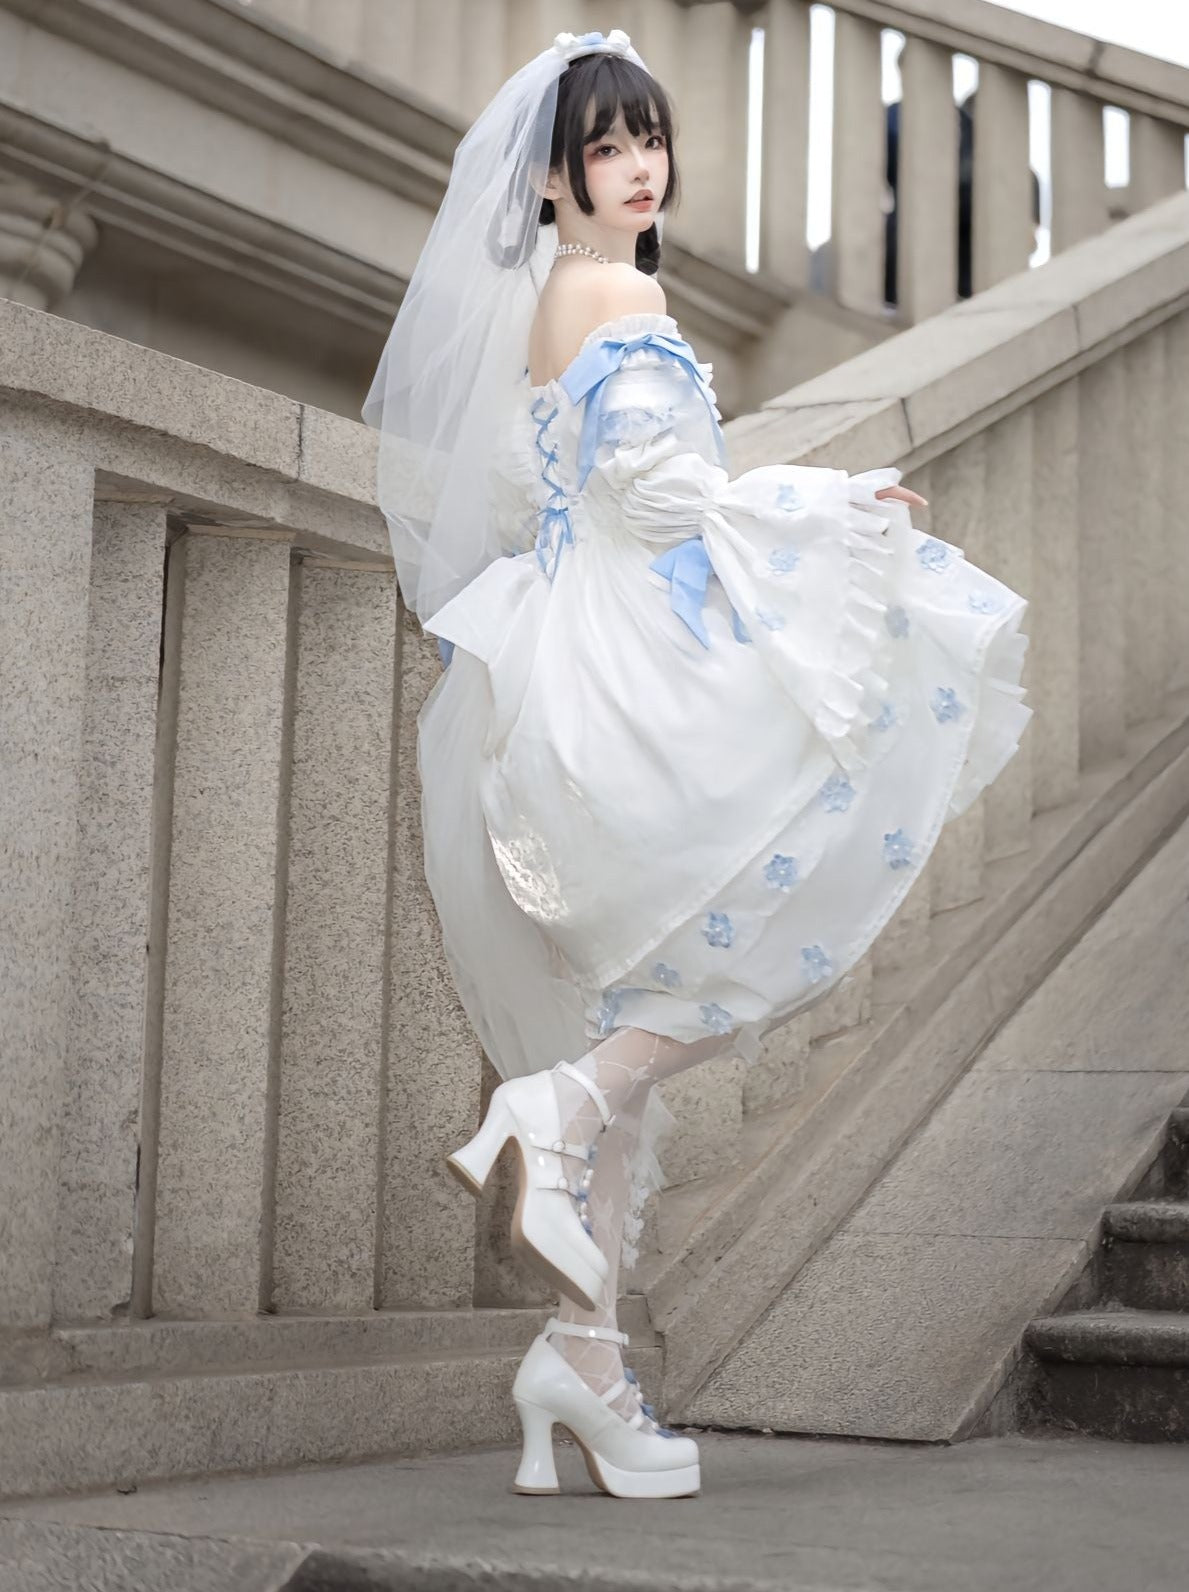 크리미 자카드 로리타 드레스 탈출 퐁 공주 드레스를 입은 귀여운 요정 로리타 리본